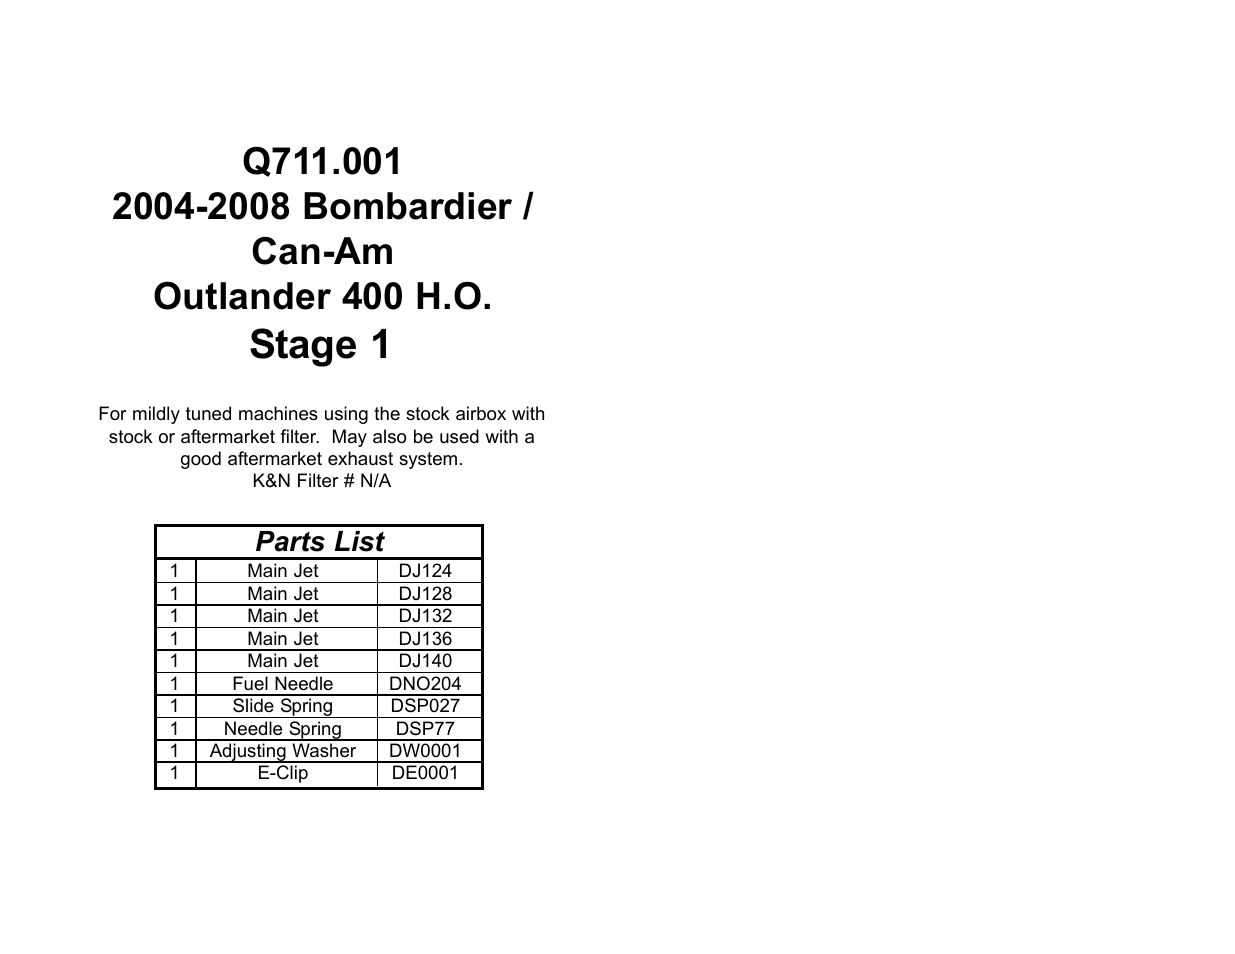 DynoJet Jet Kit for Can-Am Outlander 400 HO (04-08)